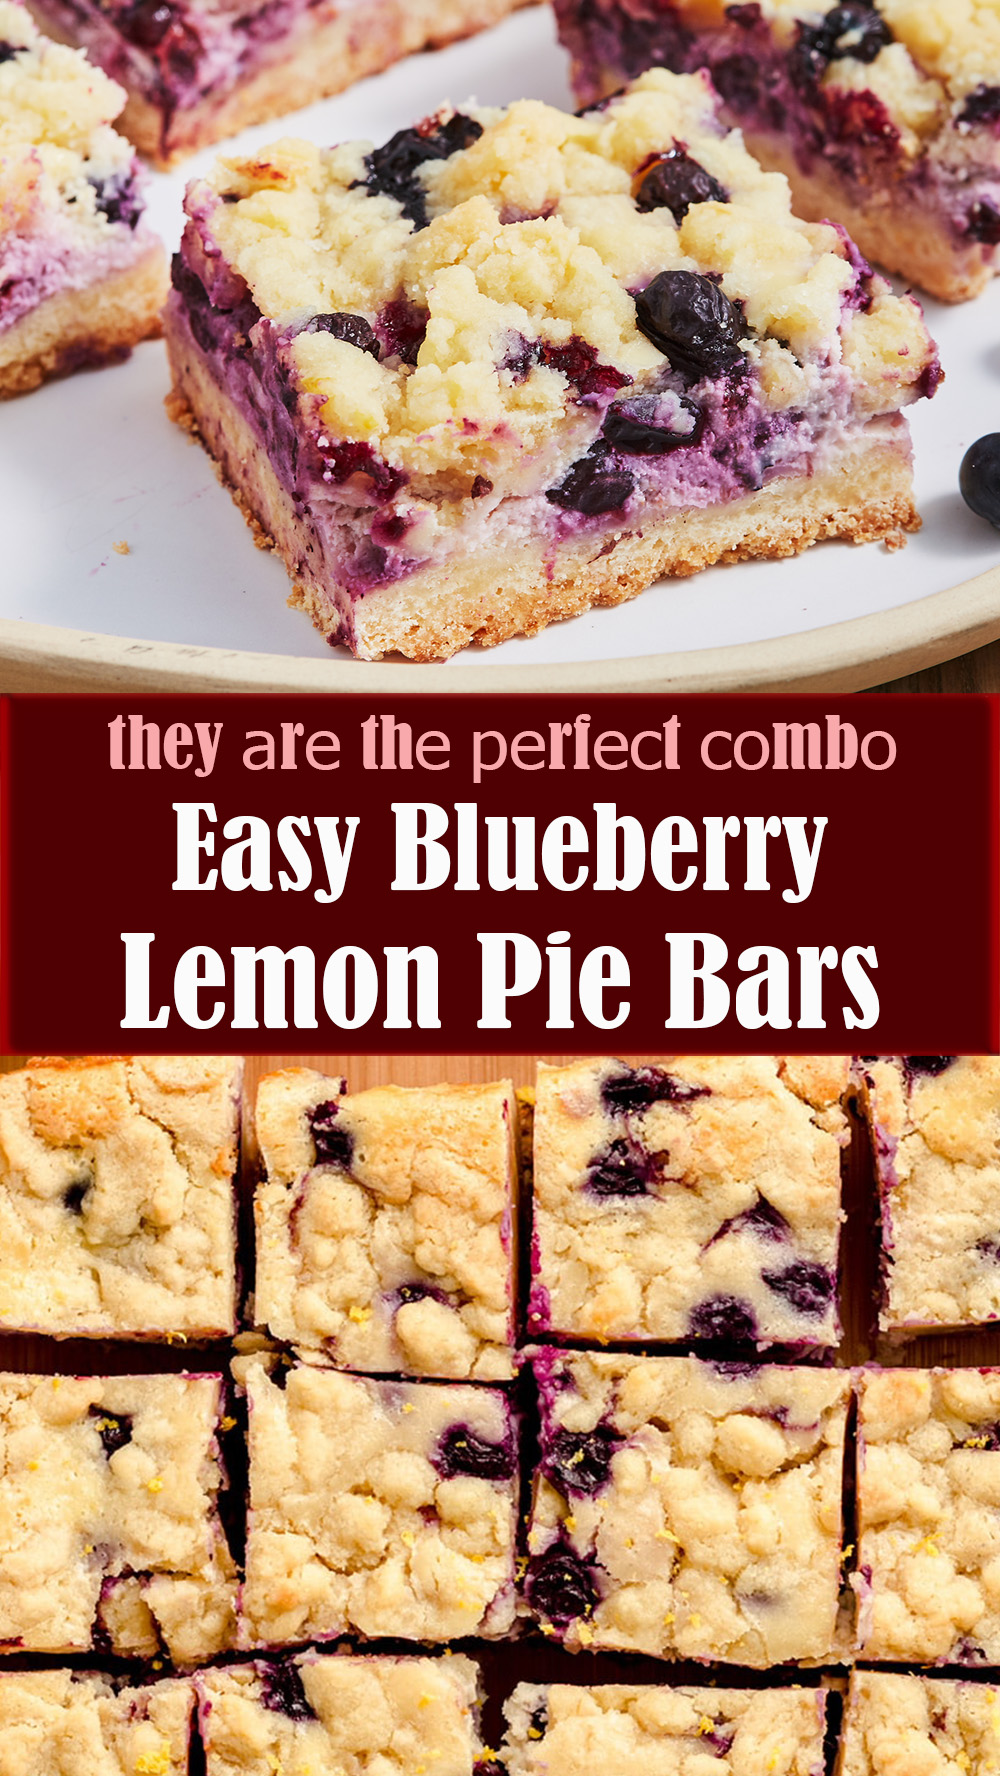 Easy Blueberry Lemon Pie Bars